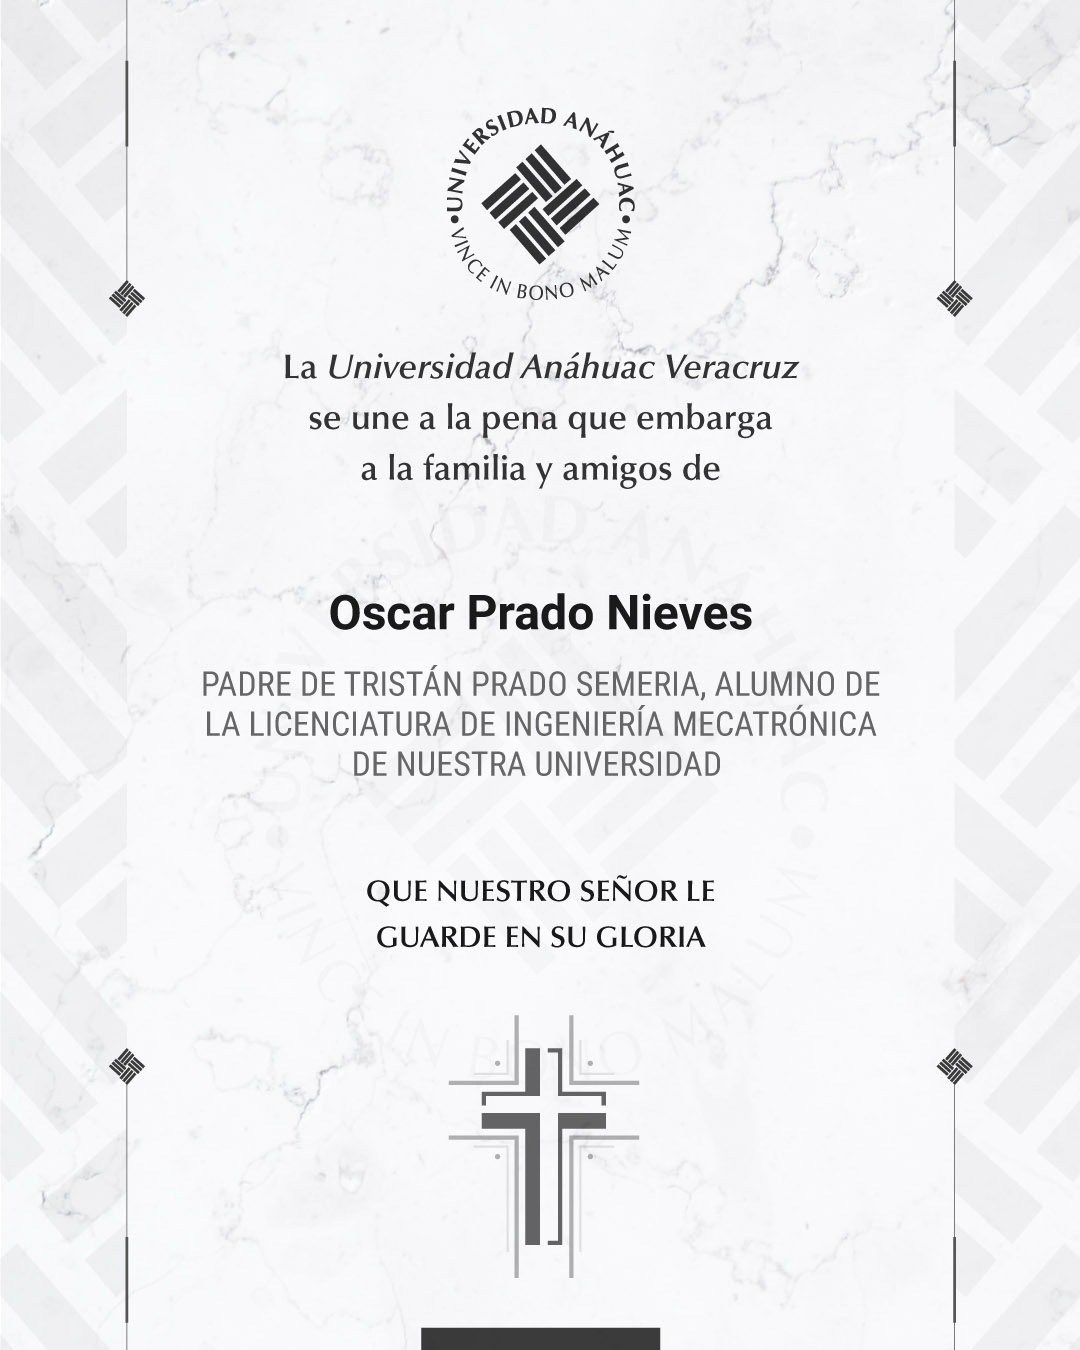 5 / 18 - Oscar Prado Nieves